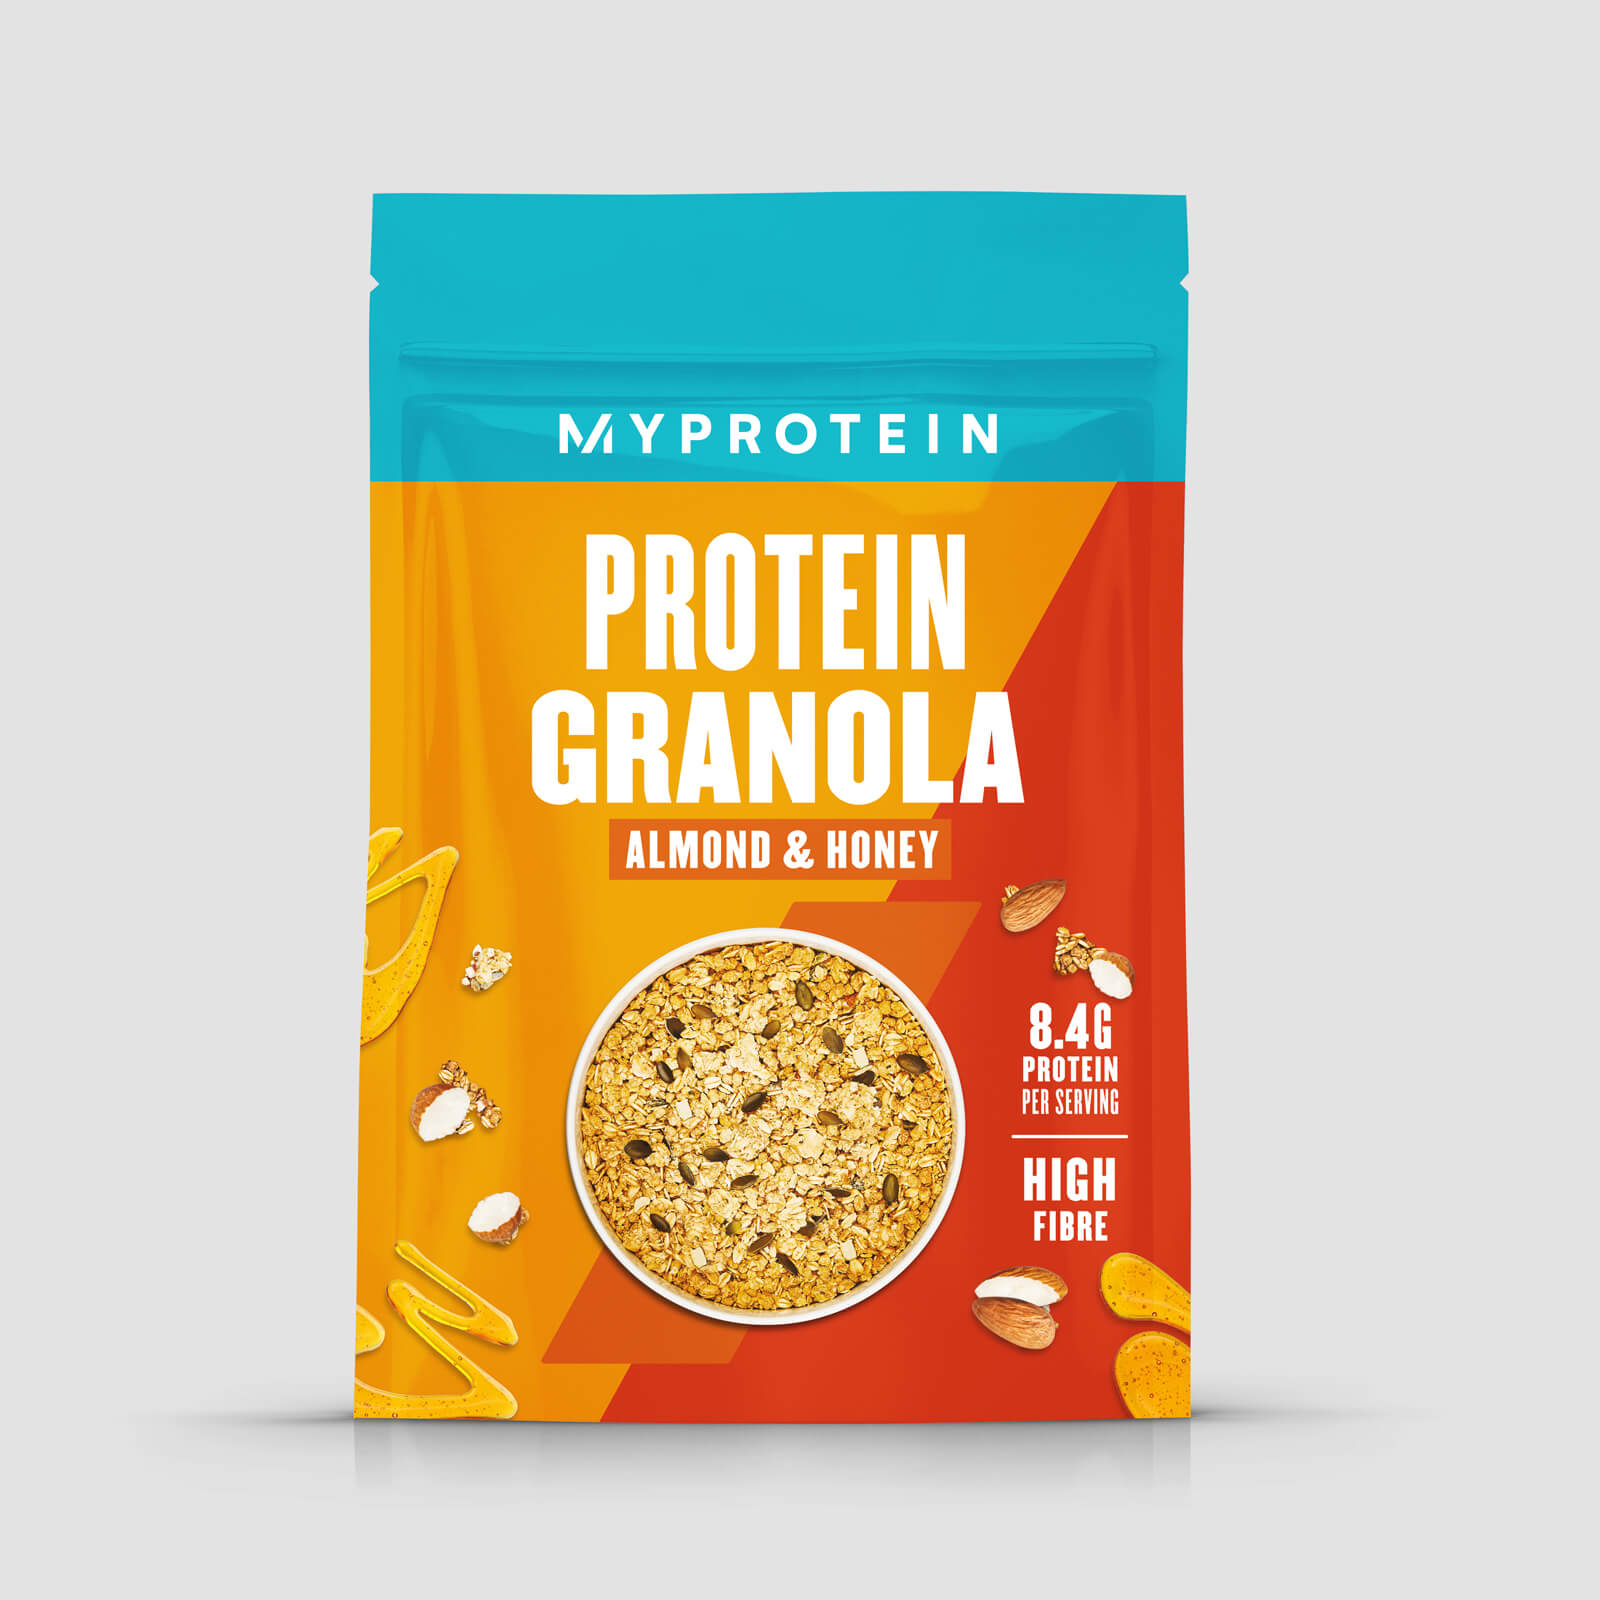 Myprotein Protein Granola - 320g - Almond & Honey